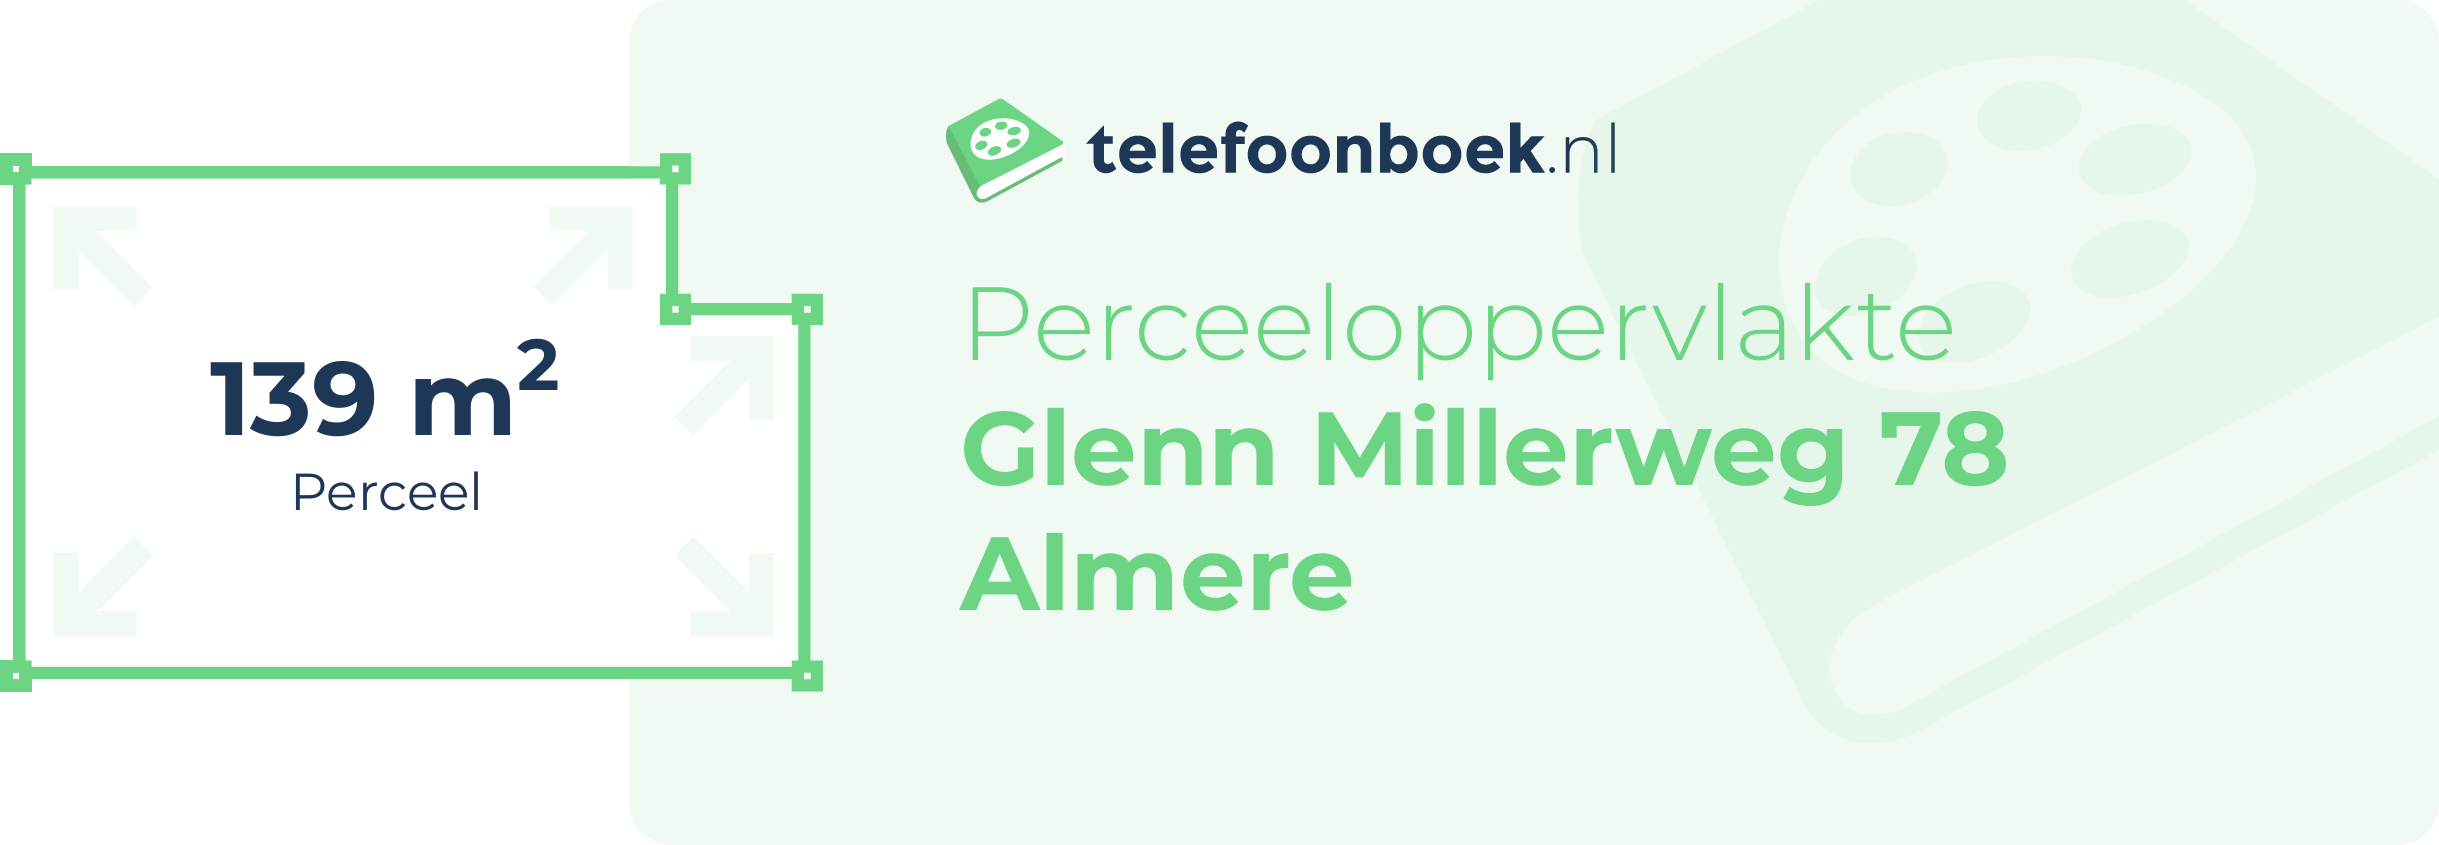 Perceeloppervlakte Glenn Millerweg 78 Almere